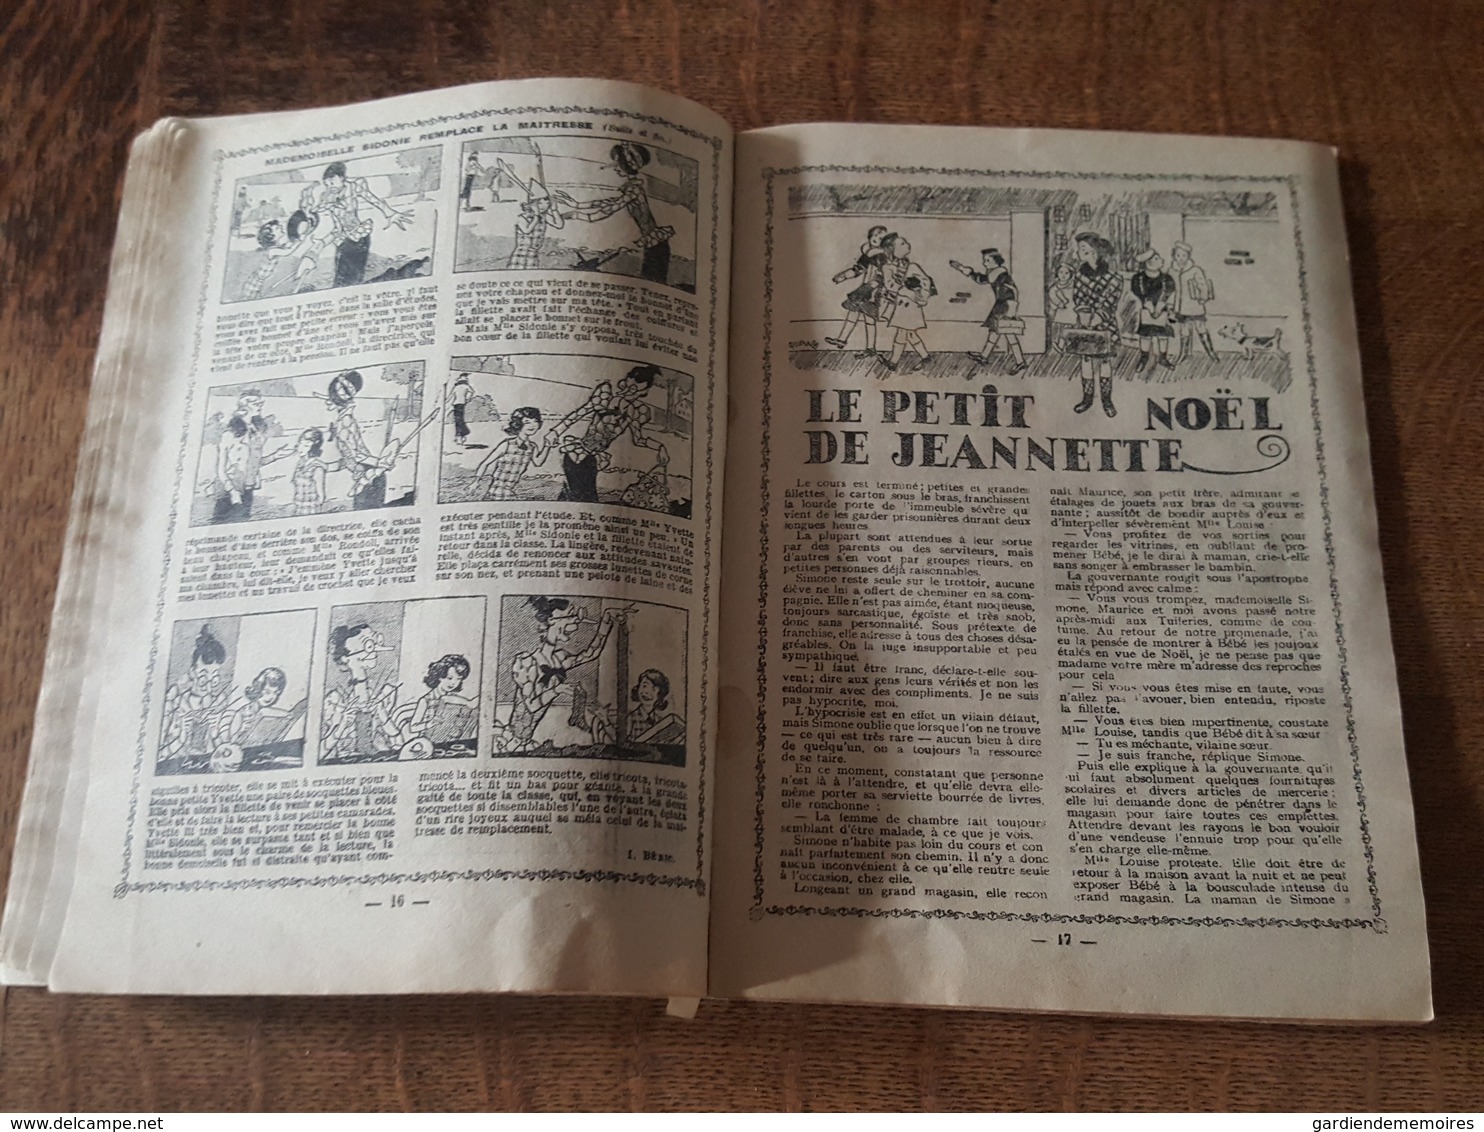 1939 - Almanach de Shirley de la Socité Parisienne d'Edition à Paris, Illustrations, Le Petit Noel de Jeannette, Couture